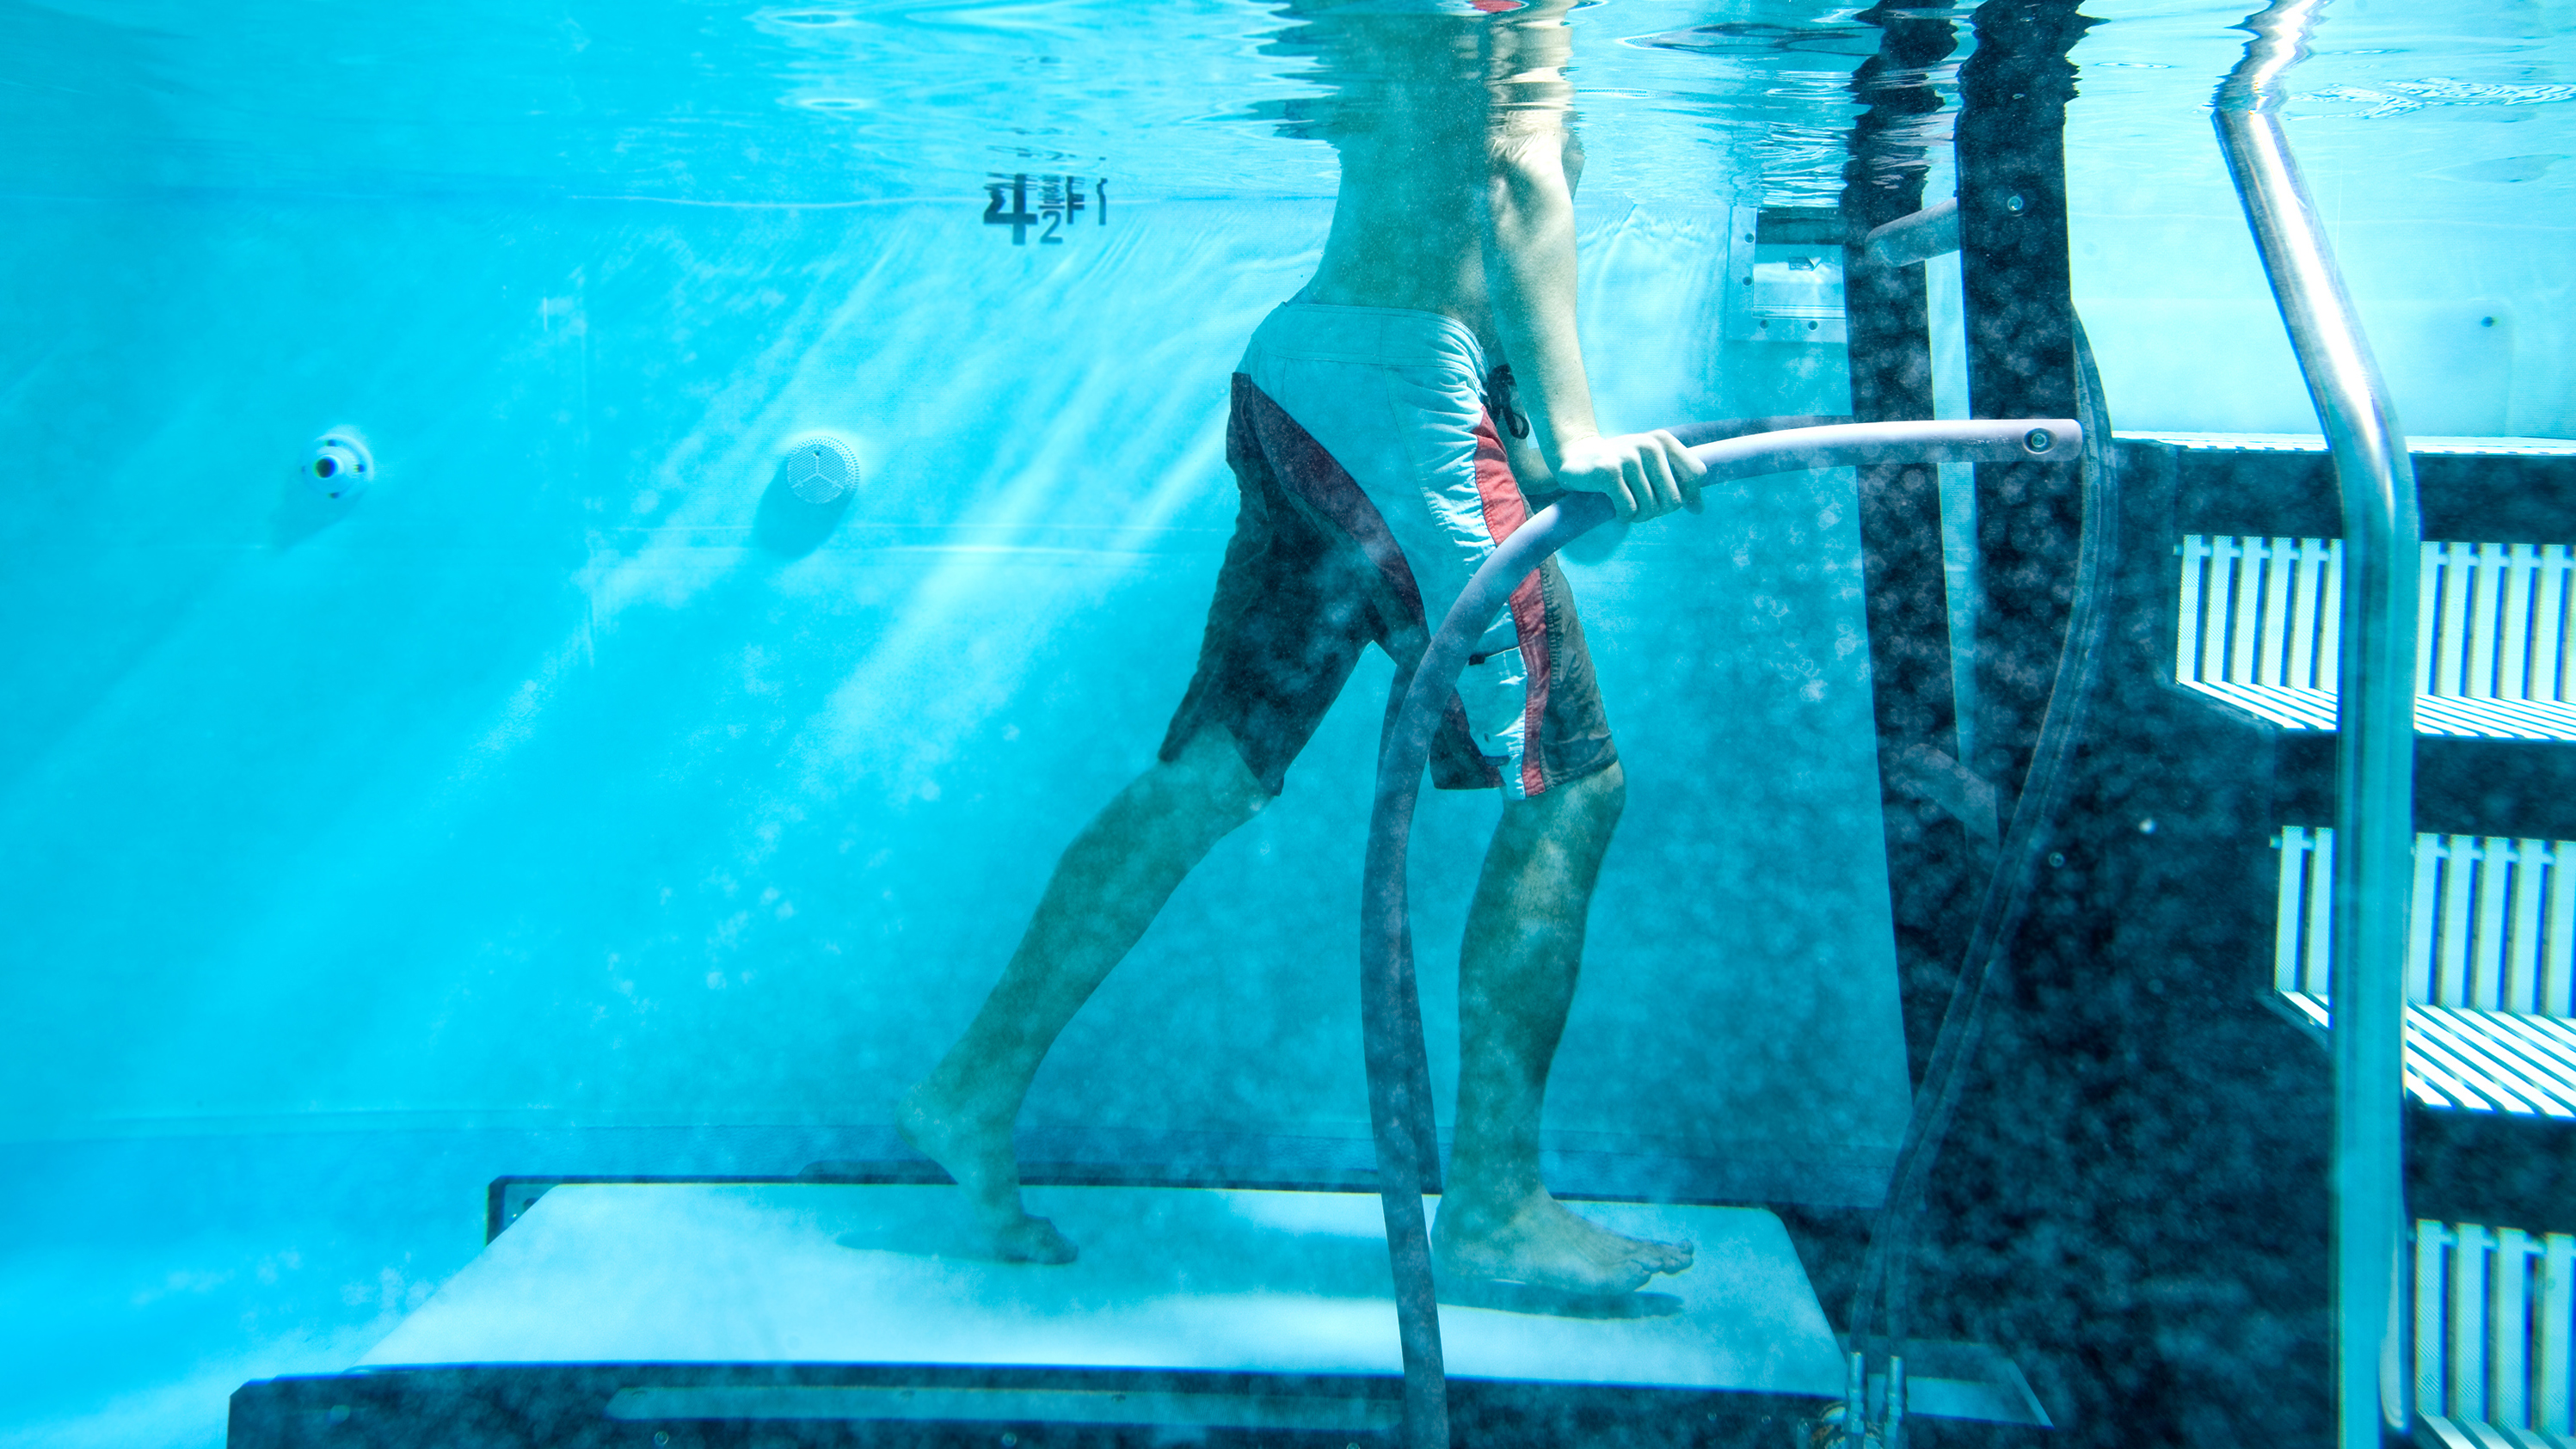 Mand bruger løbebånd under vandet